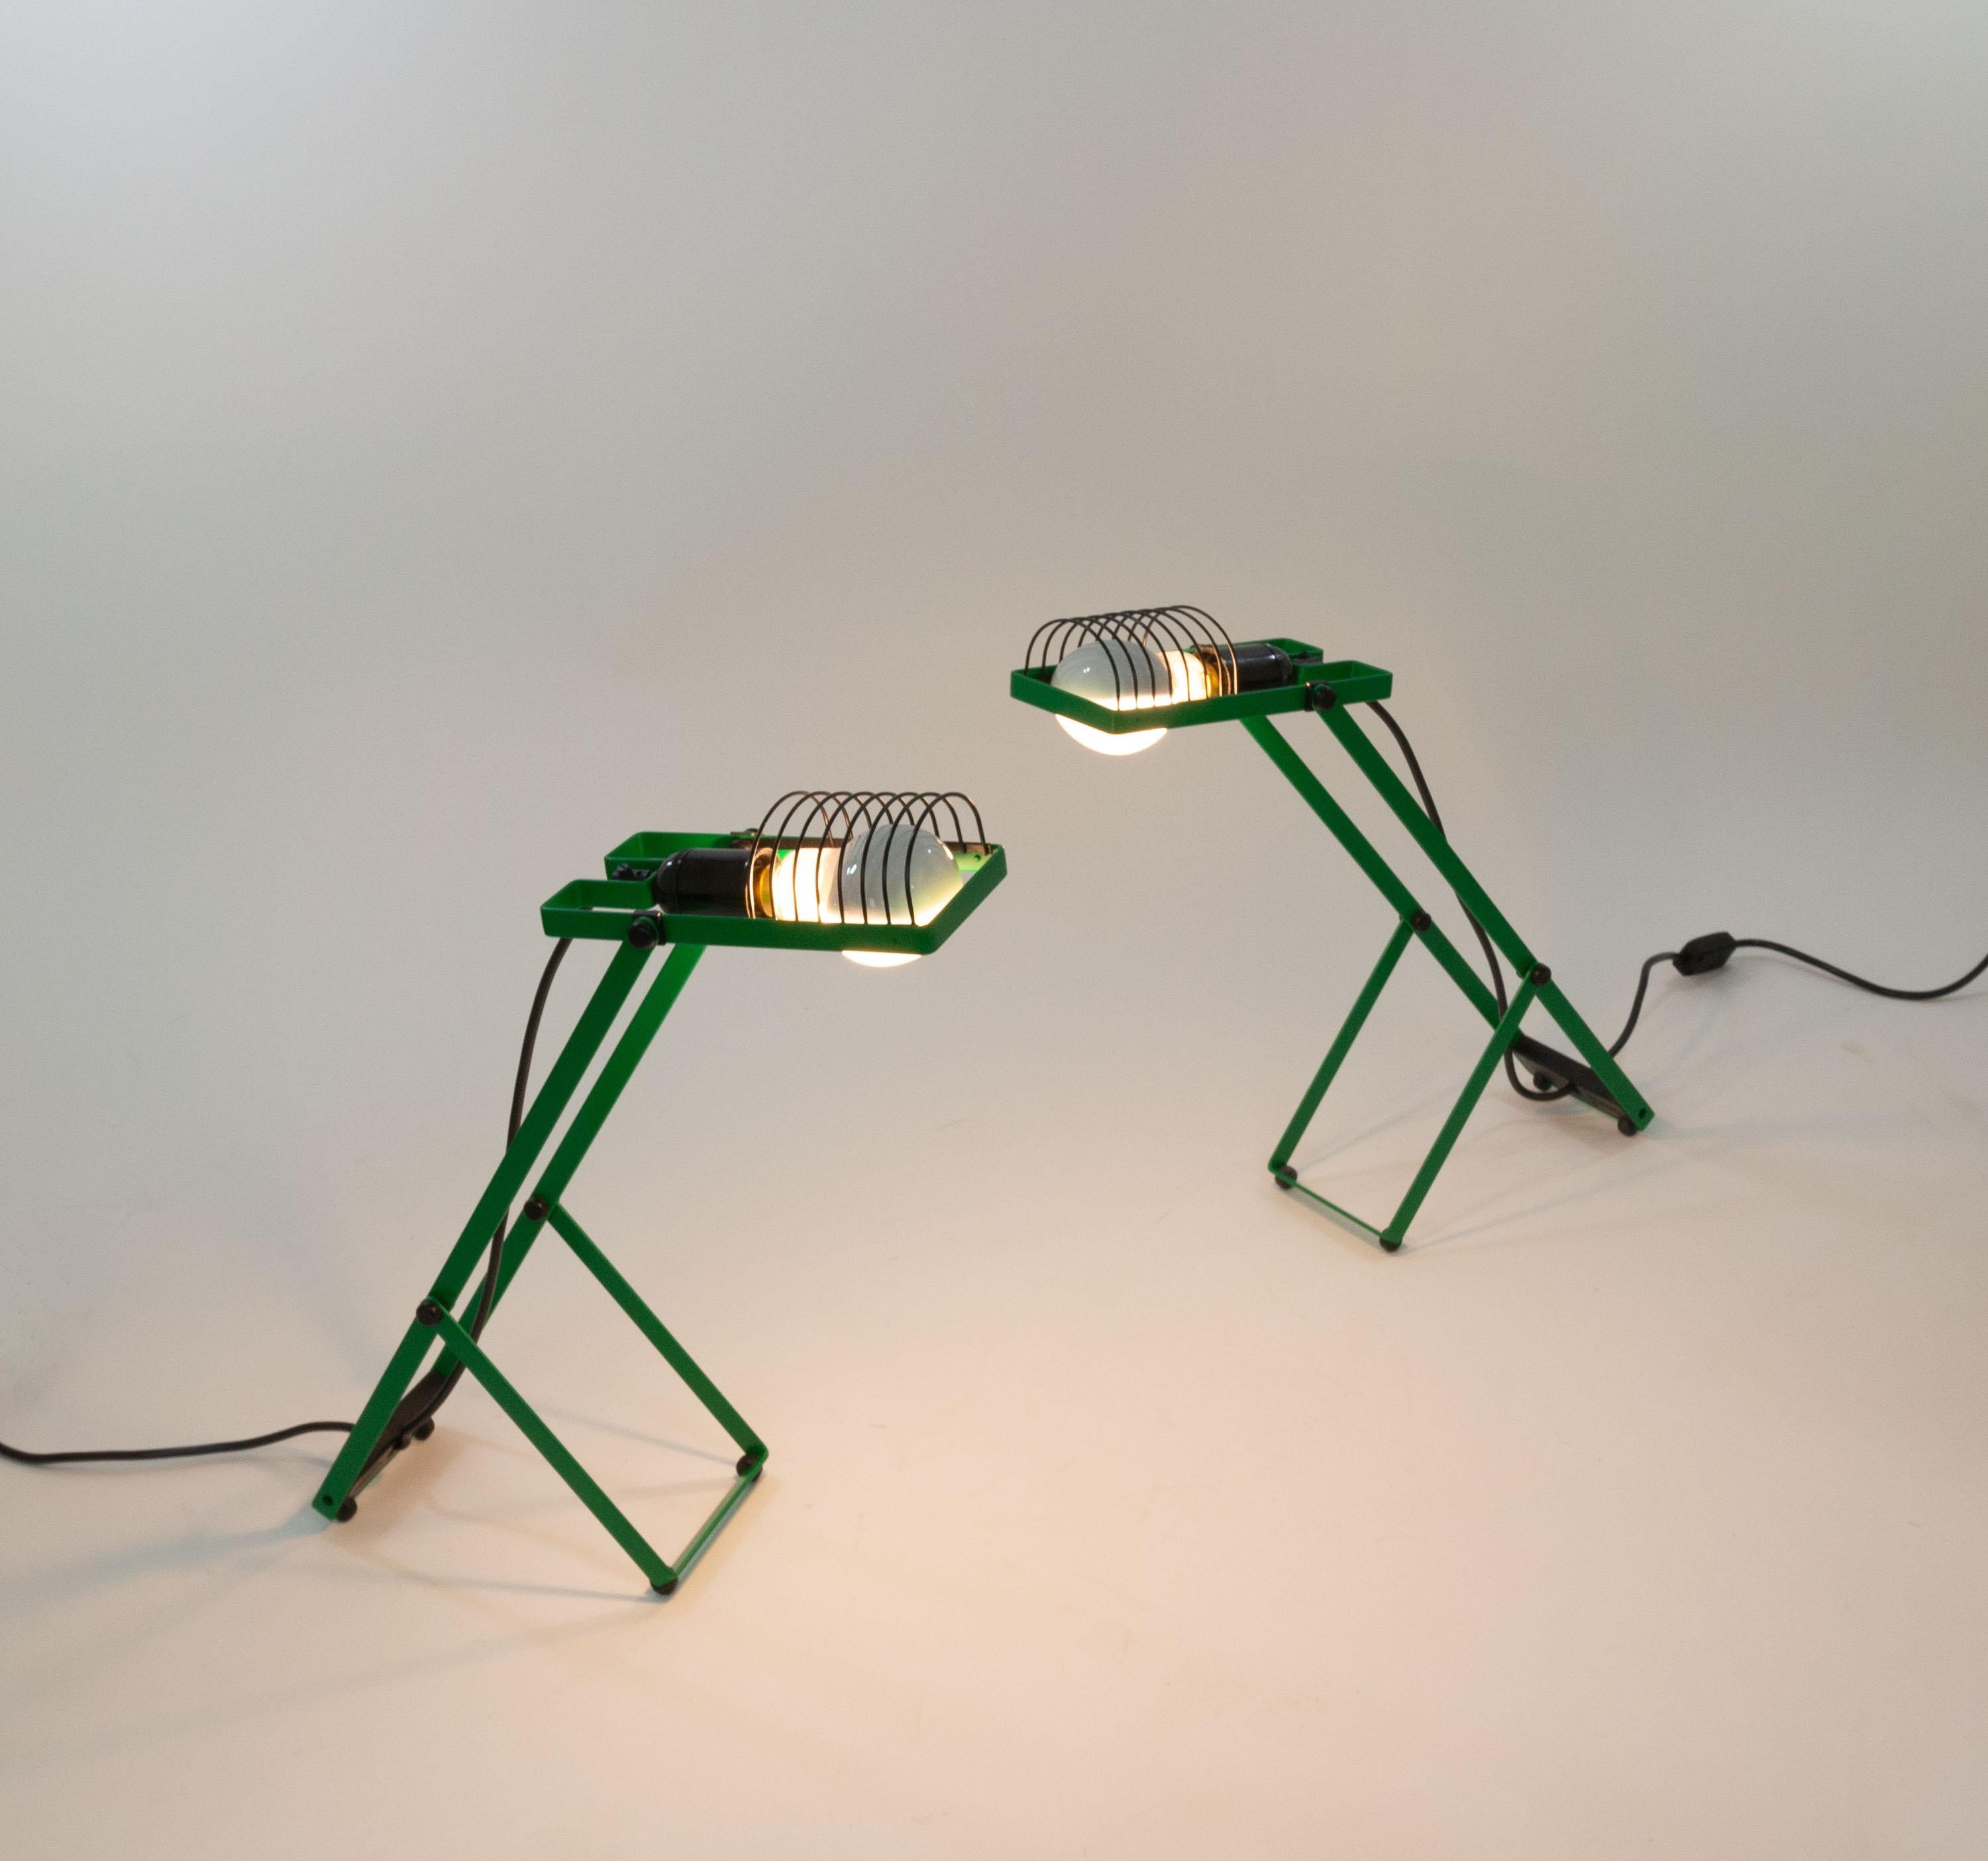 Ein Paar Sintesi-Tischlampen, entworfen von Ernesto Gismondi für die italienische Beleuchtungsfirma Artemide in den 1970er Jahren.

Diese Lampen stammen aus der ersten Serie der Sintesi-Lampen. Die Beleuchtungskörper sind für Bajonettverschlüsse